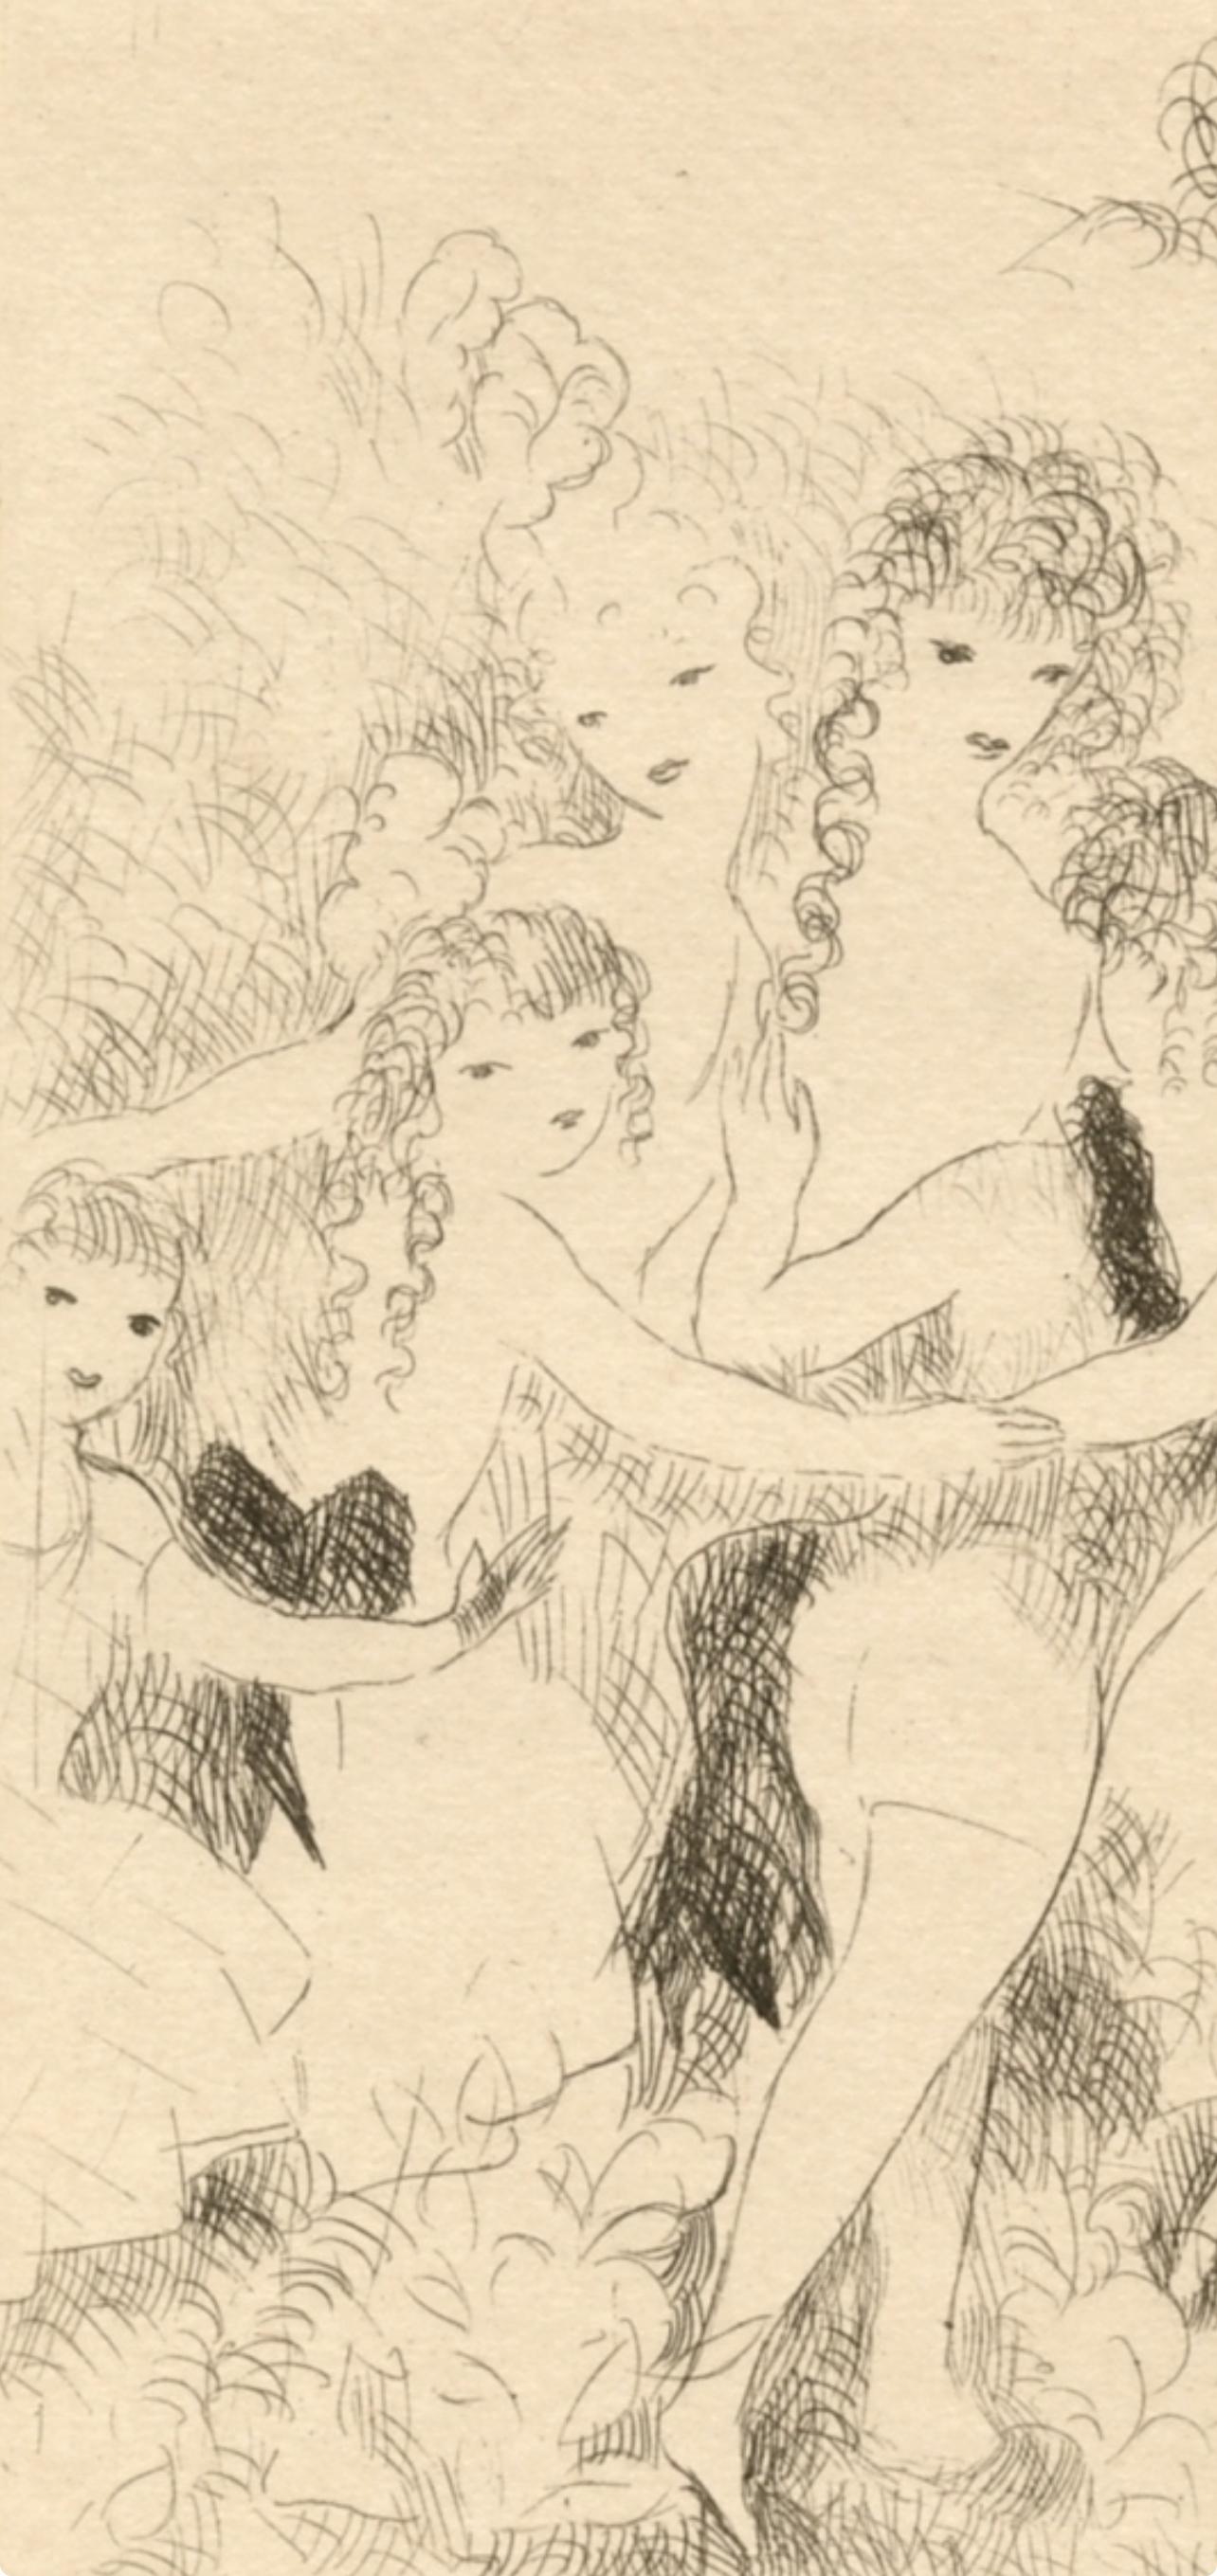 Laurencin, La Ronde, Dix filles dans un pré (after) - Modern Print by Marie Laurencin